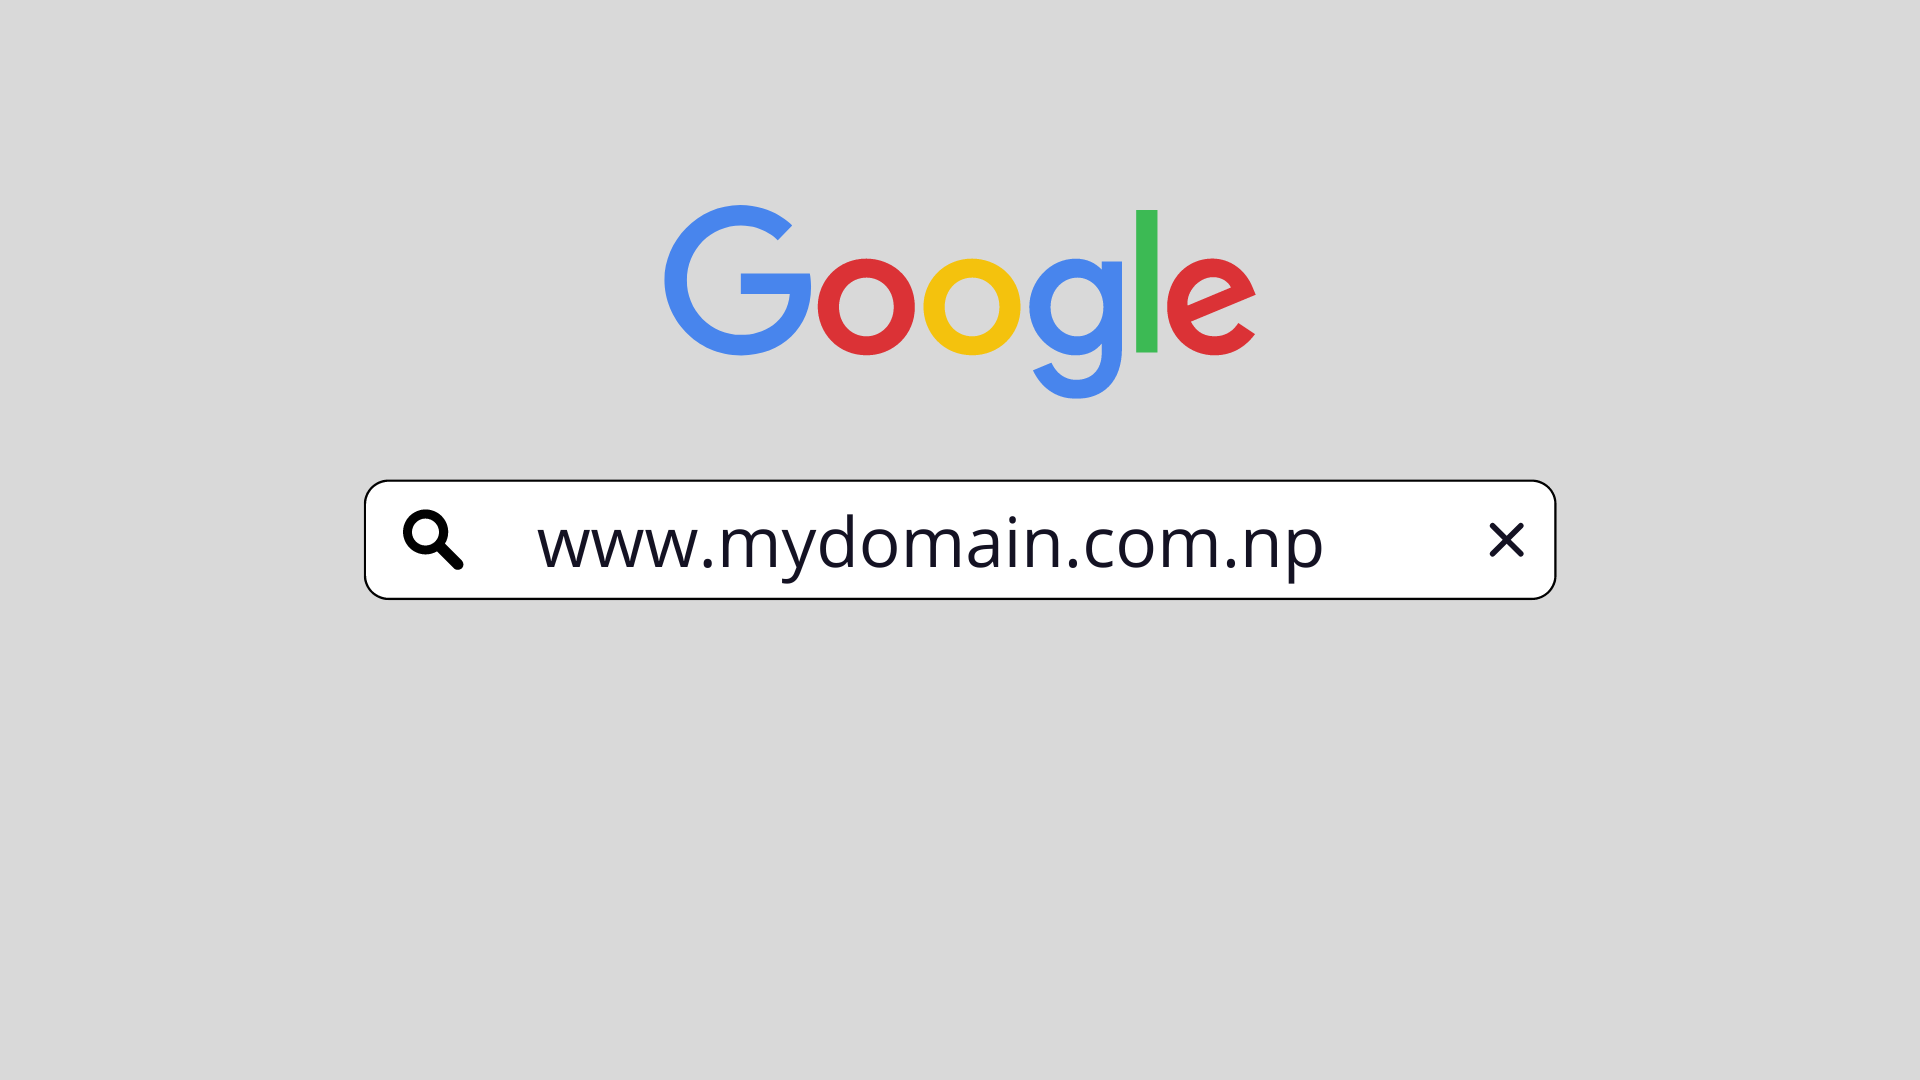 कसरी लिन सकिन्छ .com .np को निशुल्क डोमेन नाम?